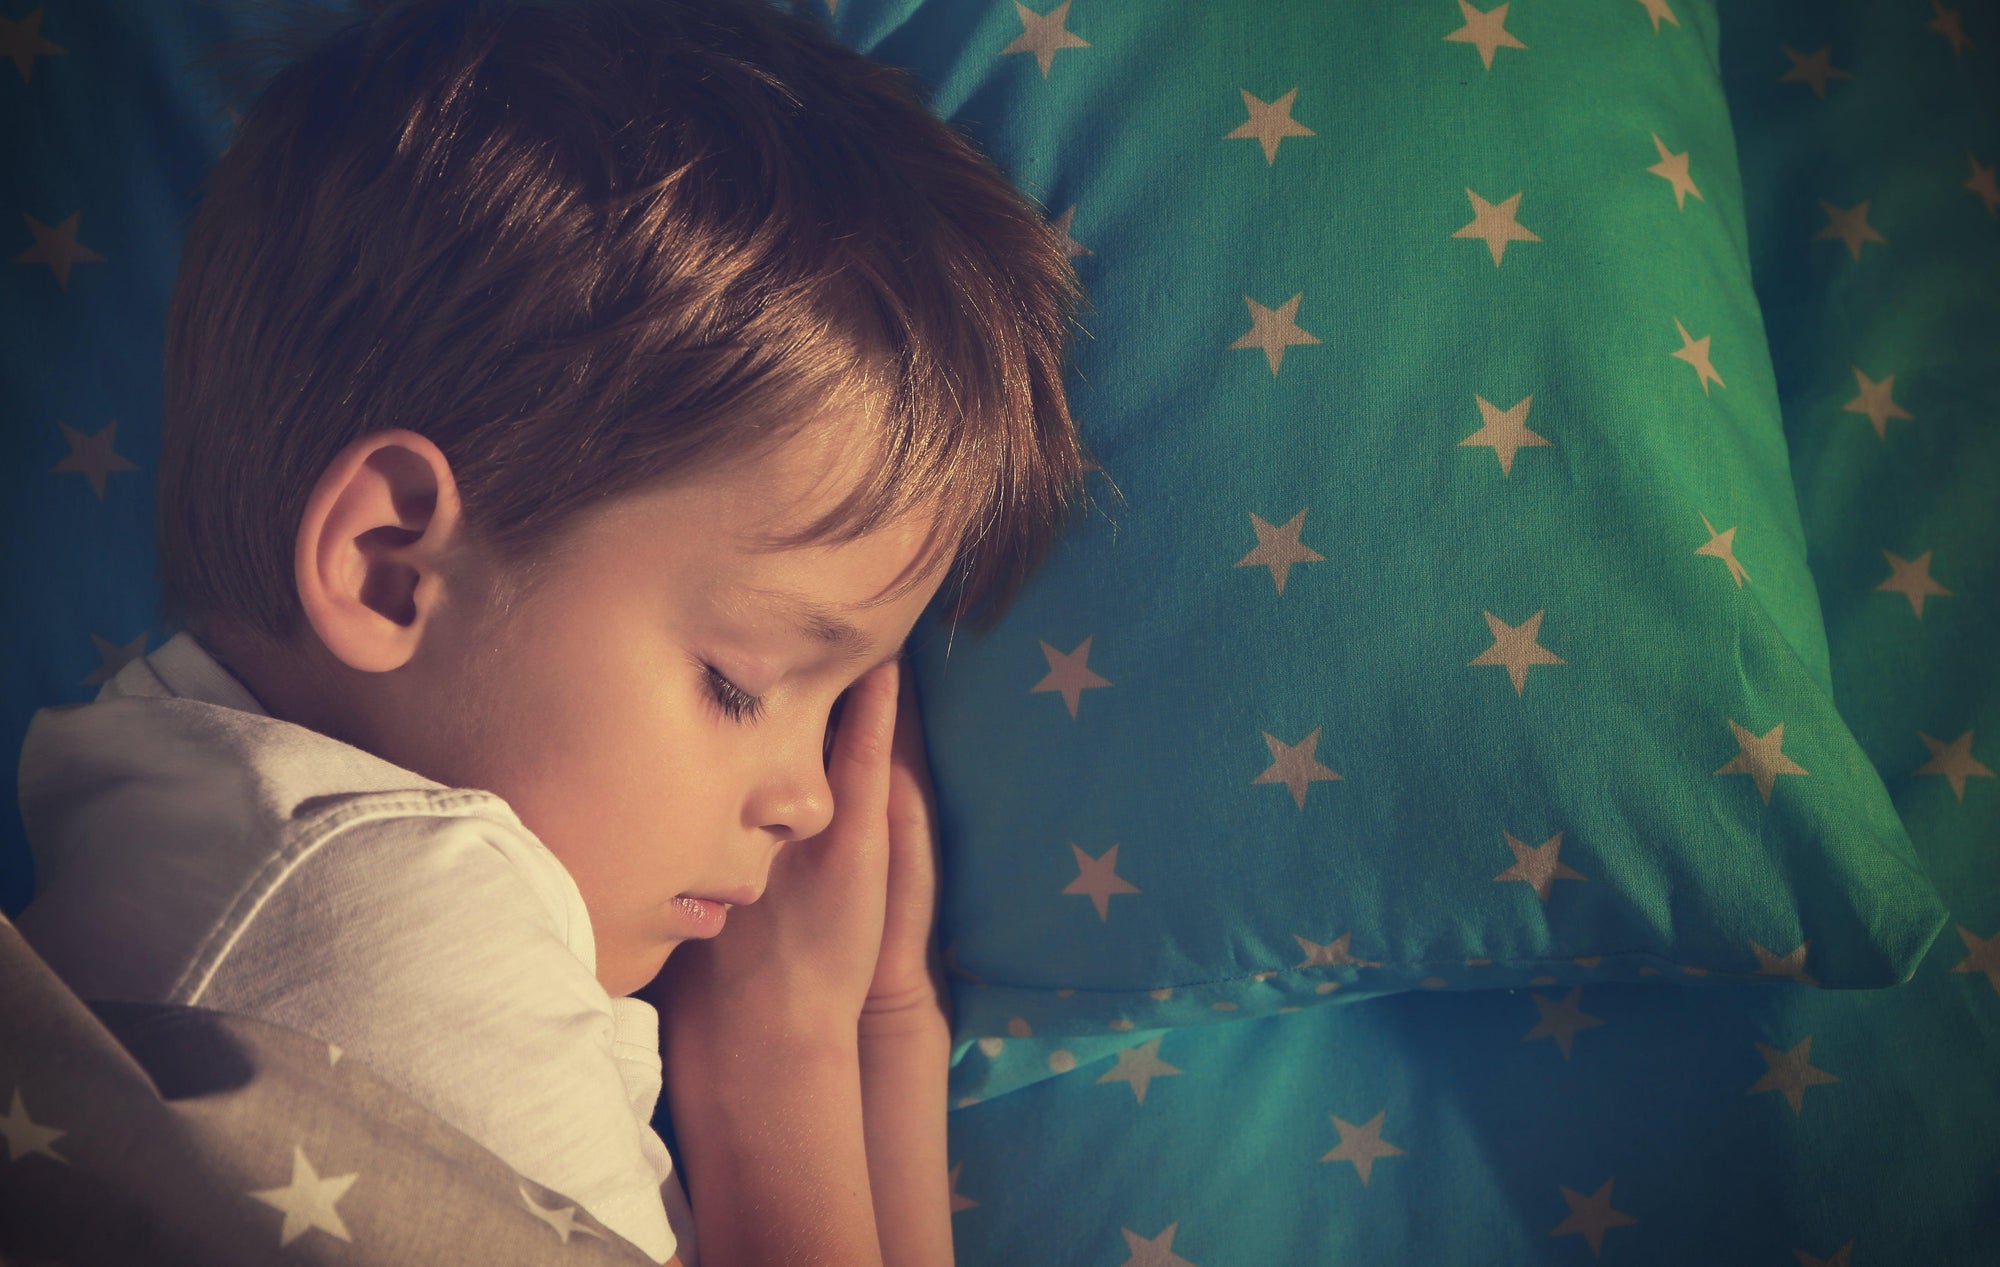 Sleep + Children : How EMFs Can Impact Developmental Periods - airestech